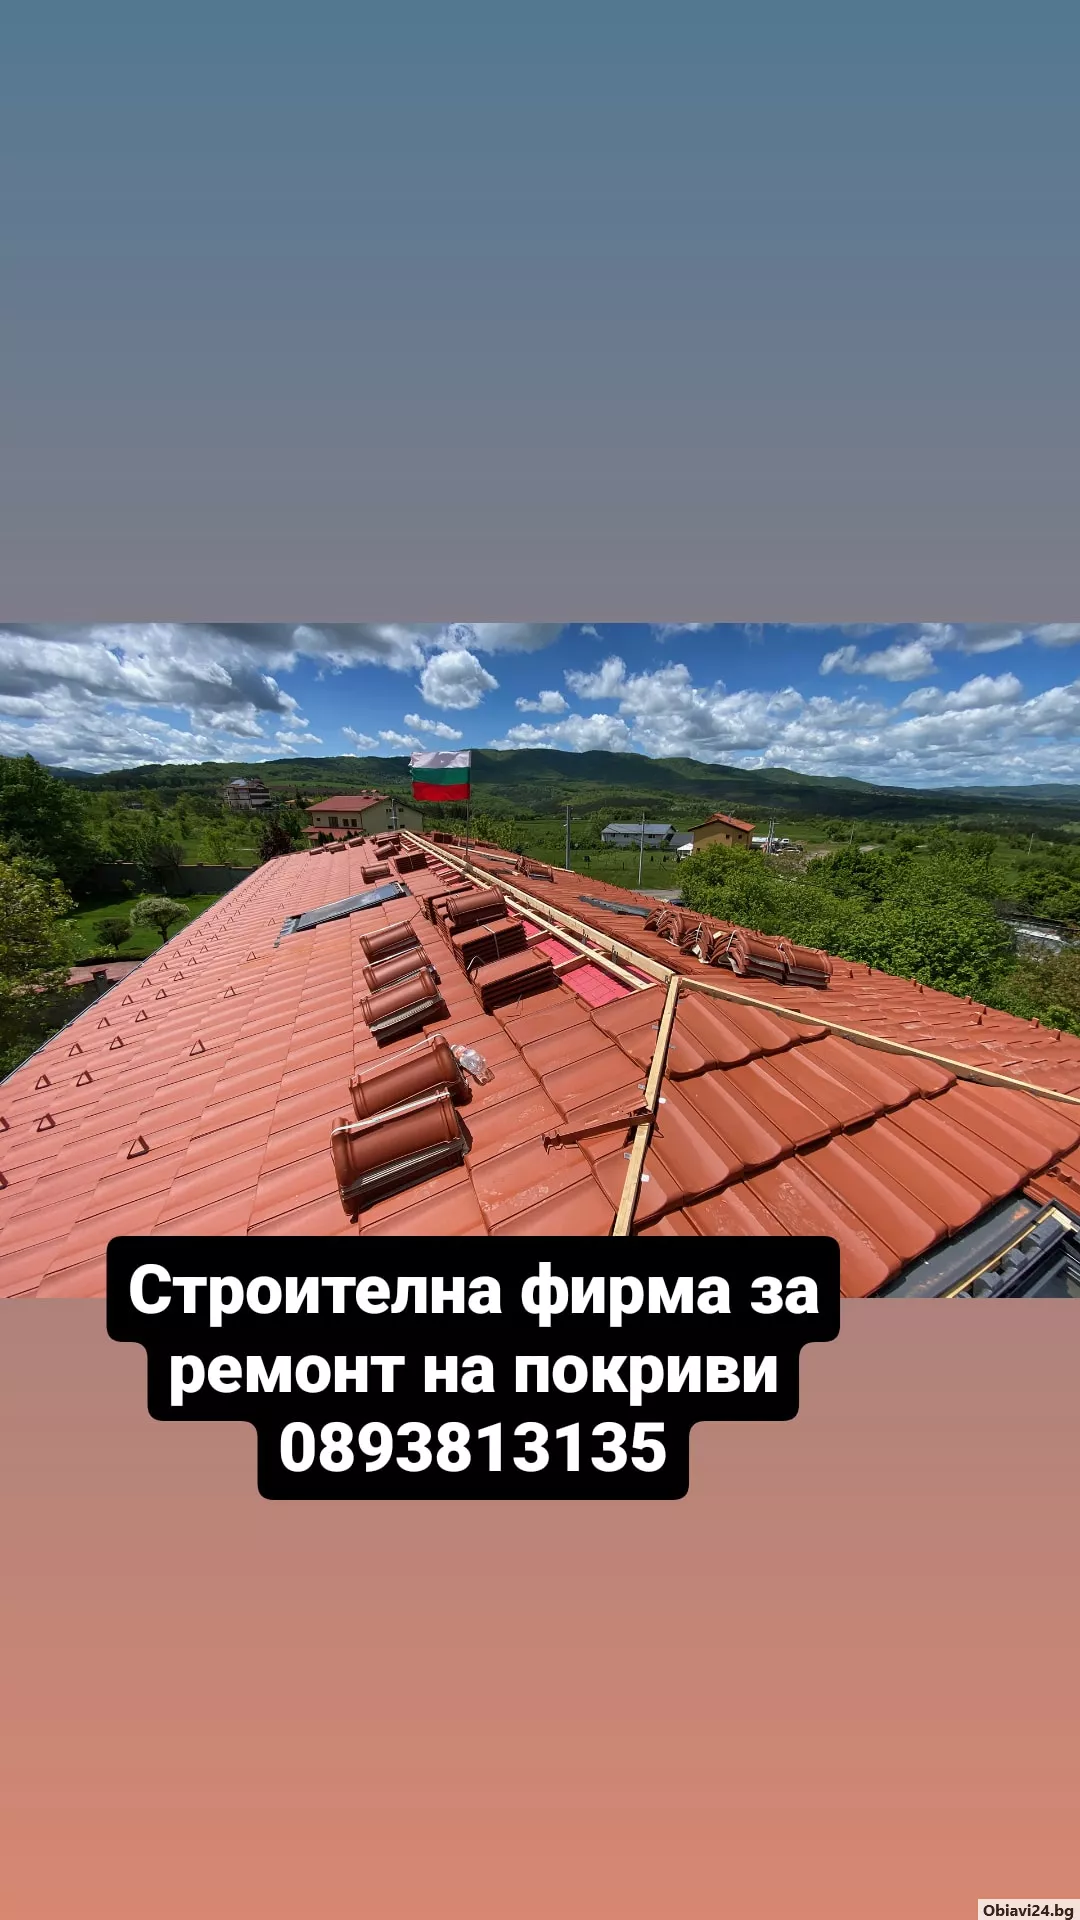 Ремонт на покриви навеси хидроизолация беседки - obiavi24.bg